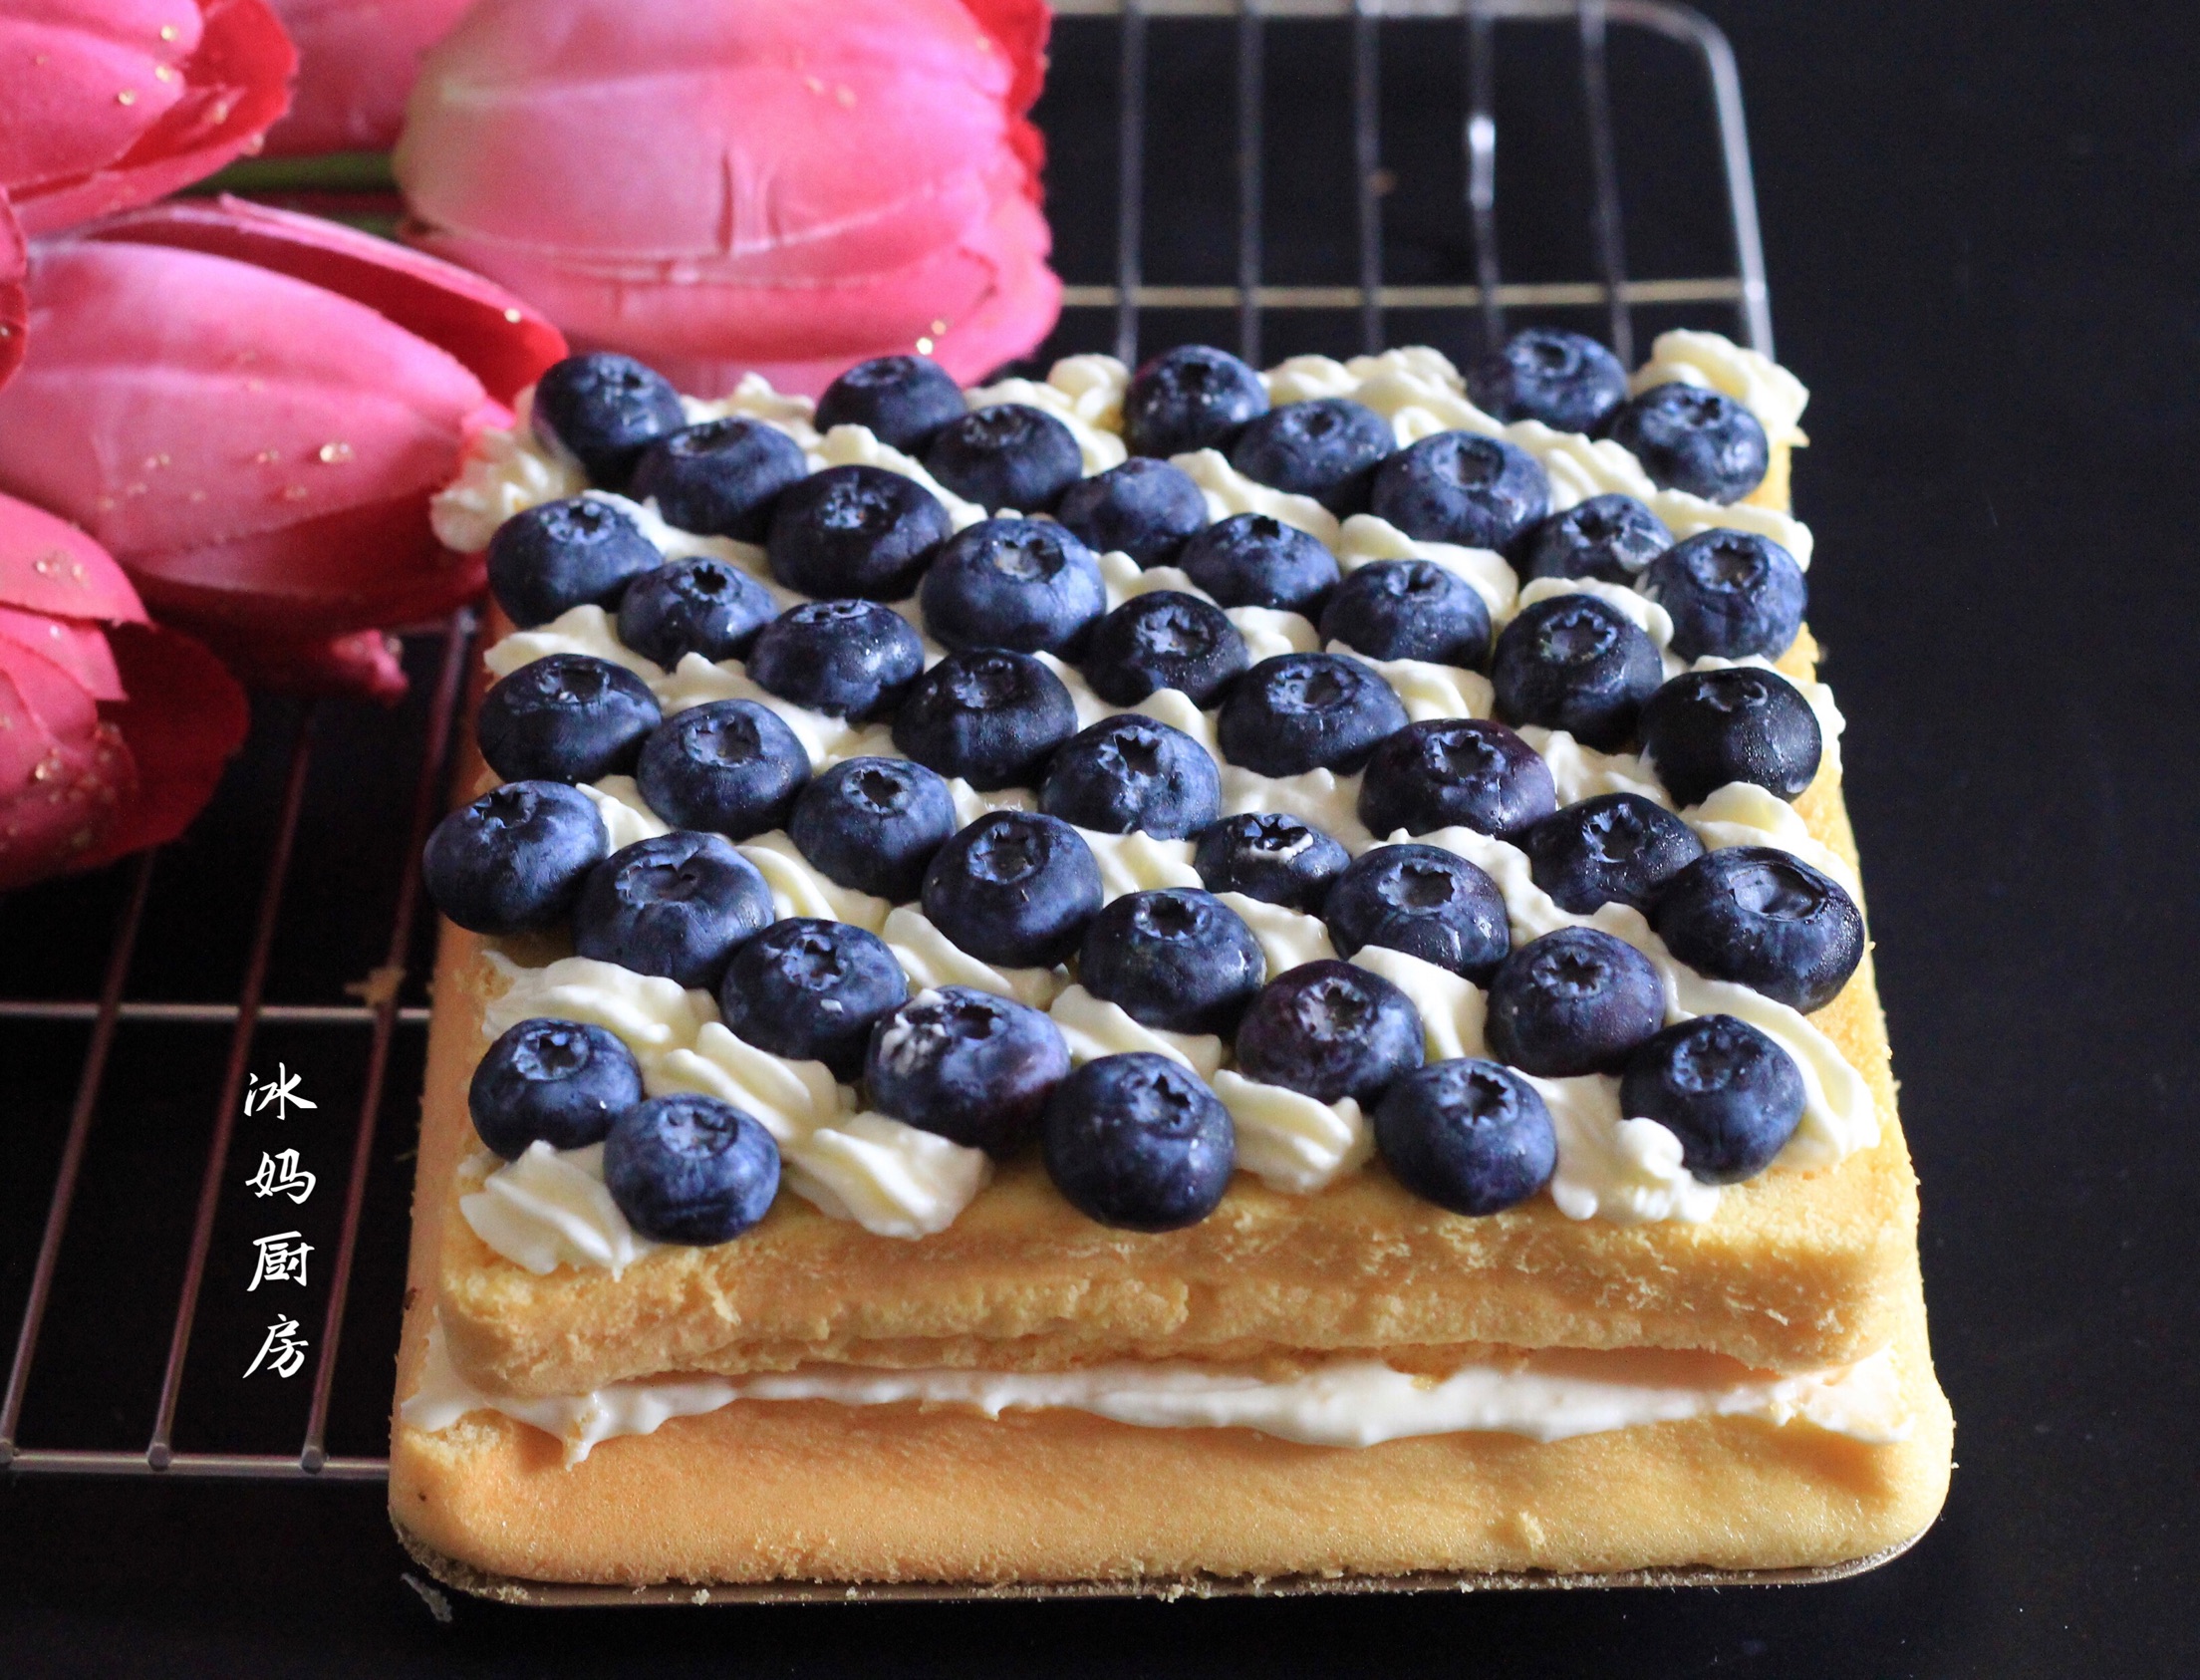 蓝莓裸蛋糕